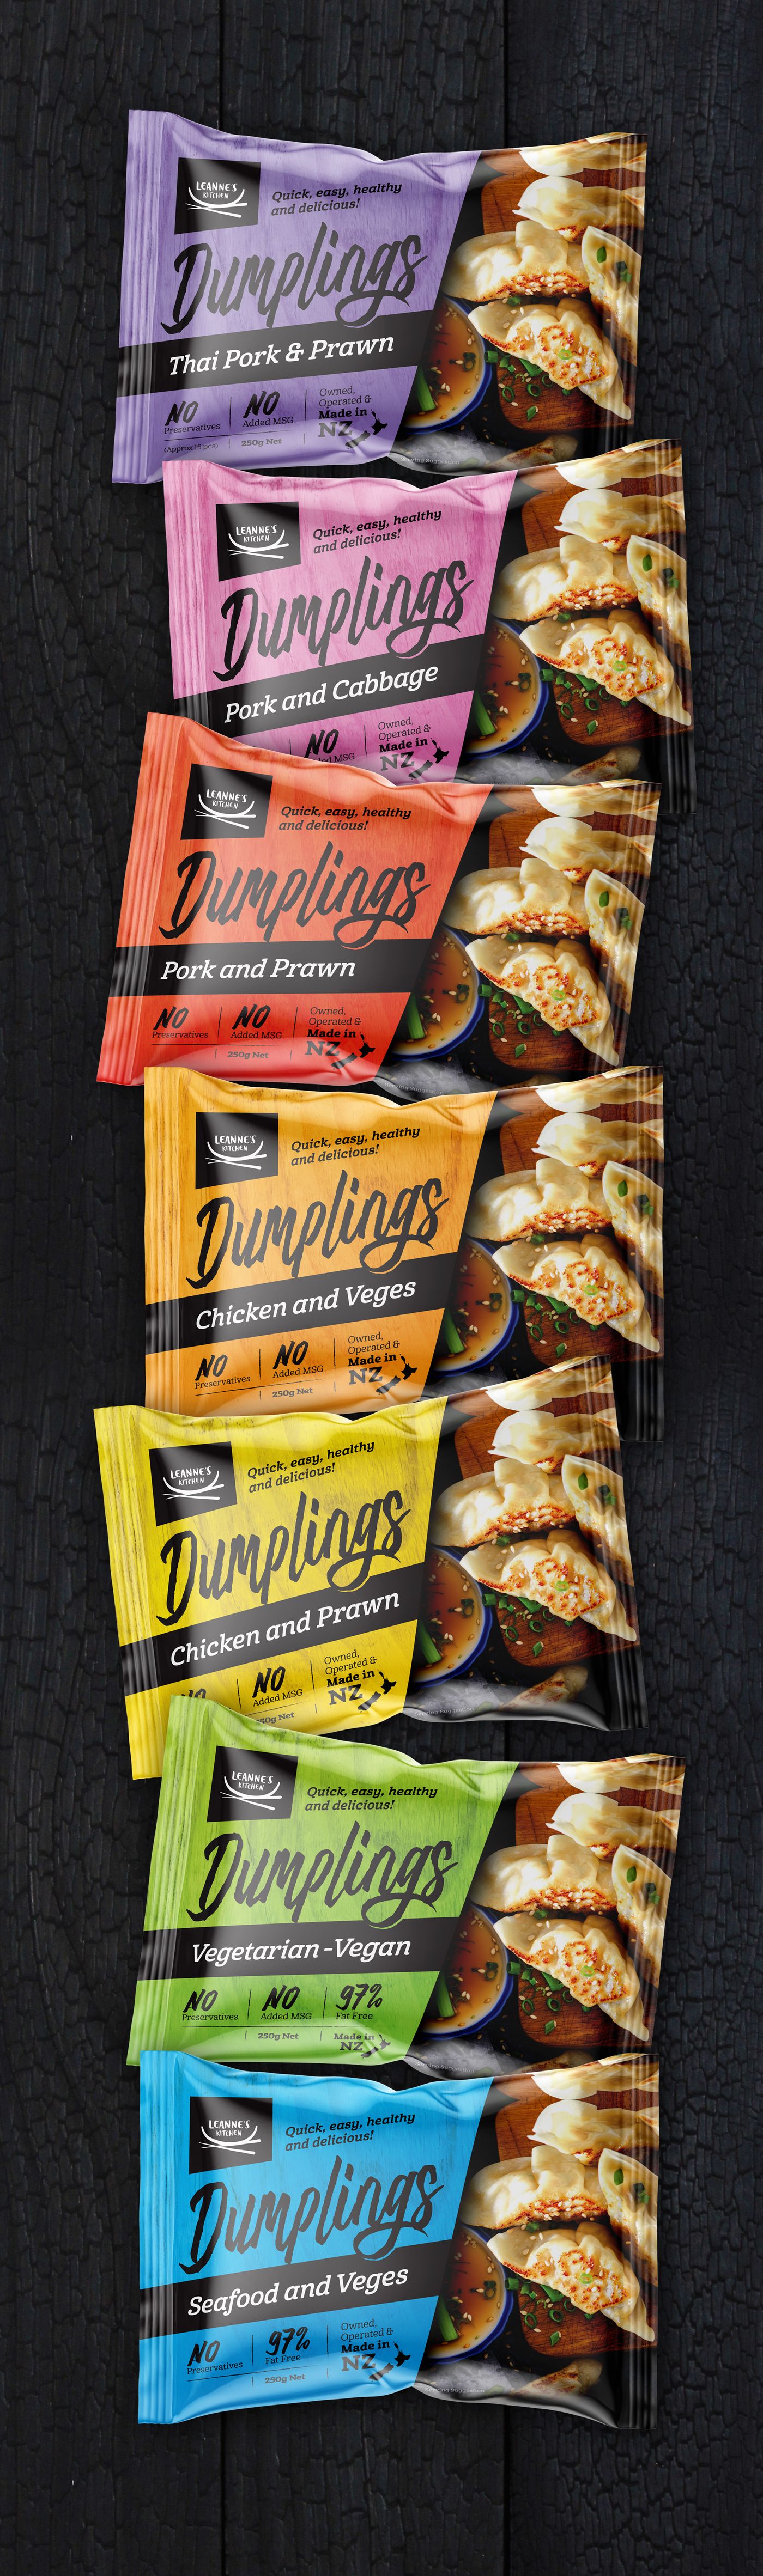 Dumpling packaging design